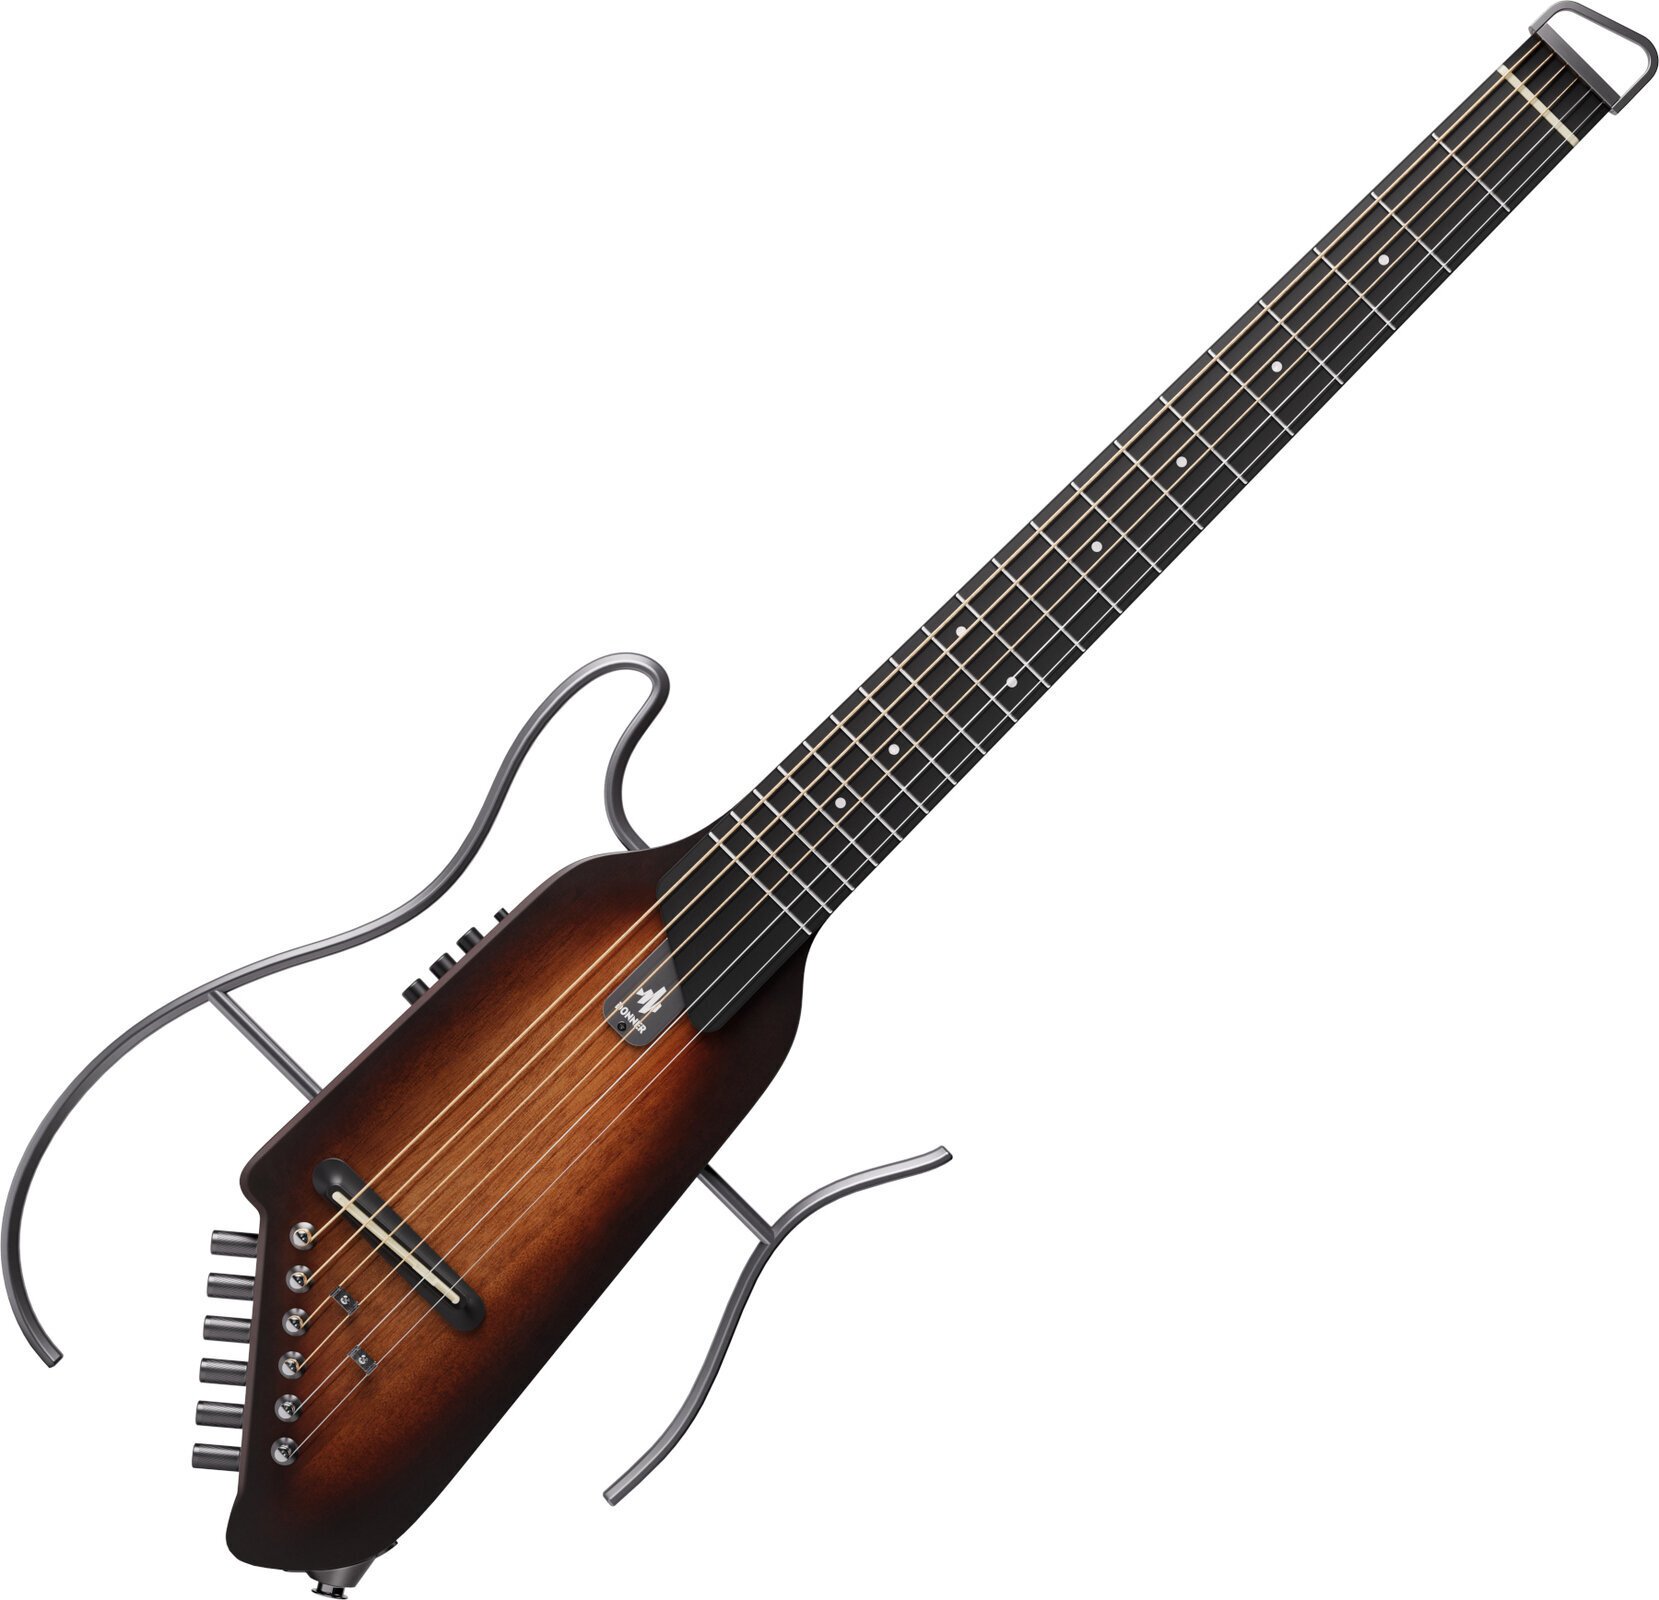 Elektroakoestische gitaar Donner EC1783 HUSH-I - Mahogany Sunburst Sunburst